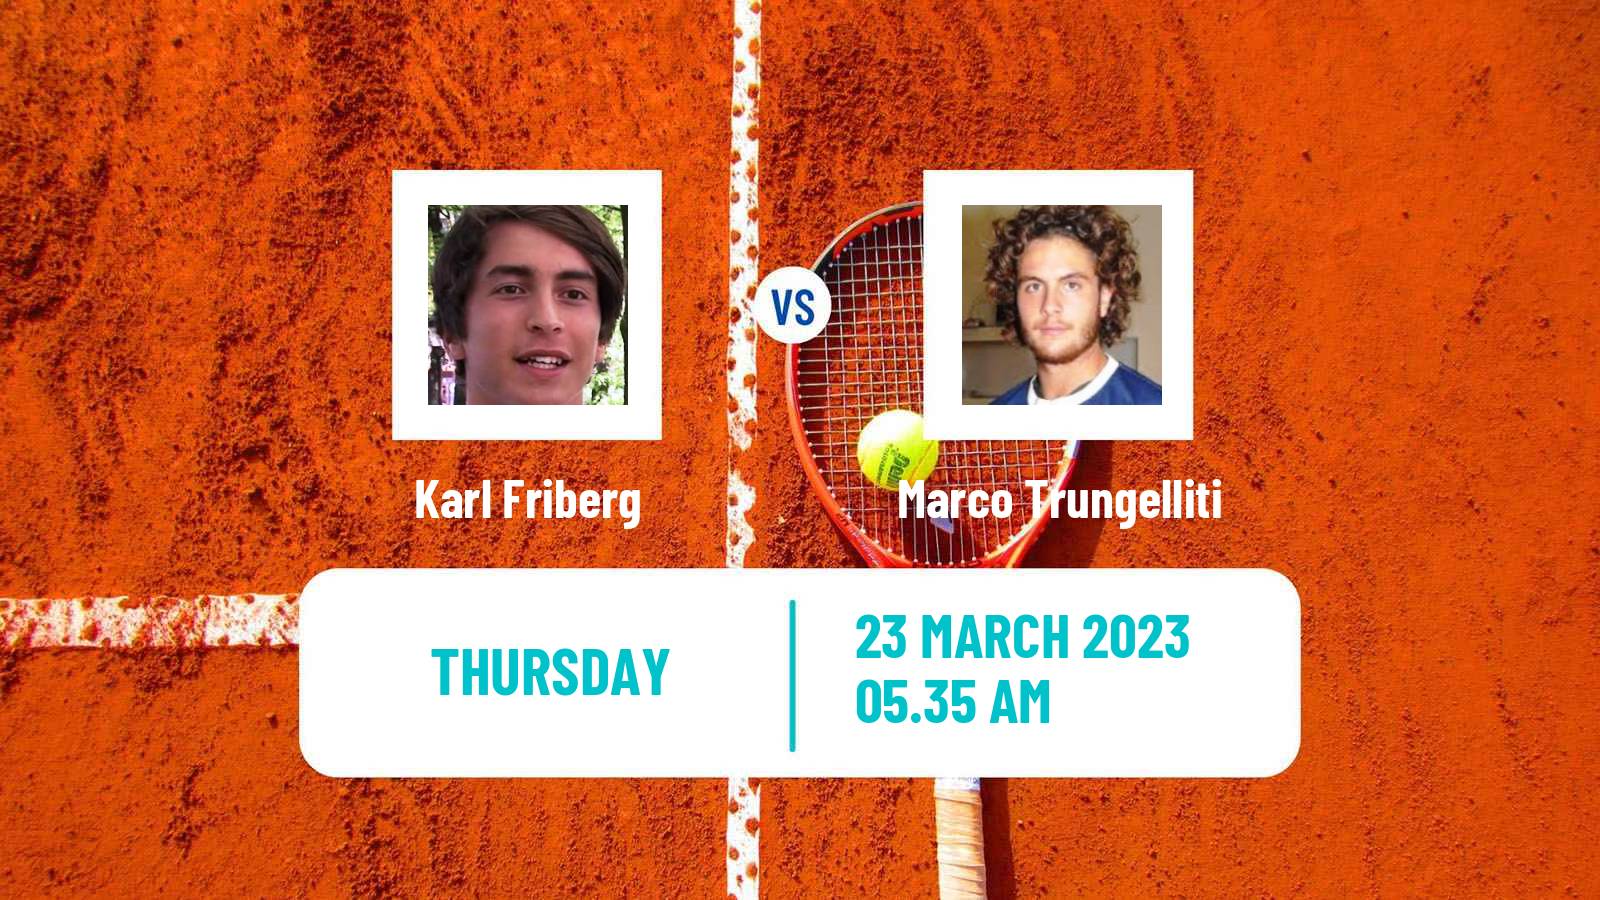 Tennis ATP Challenger Karl Friberg - Marco Trungelliti